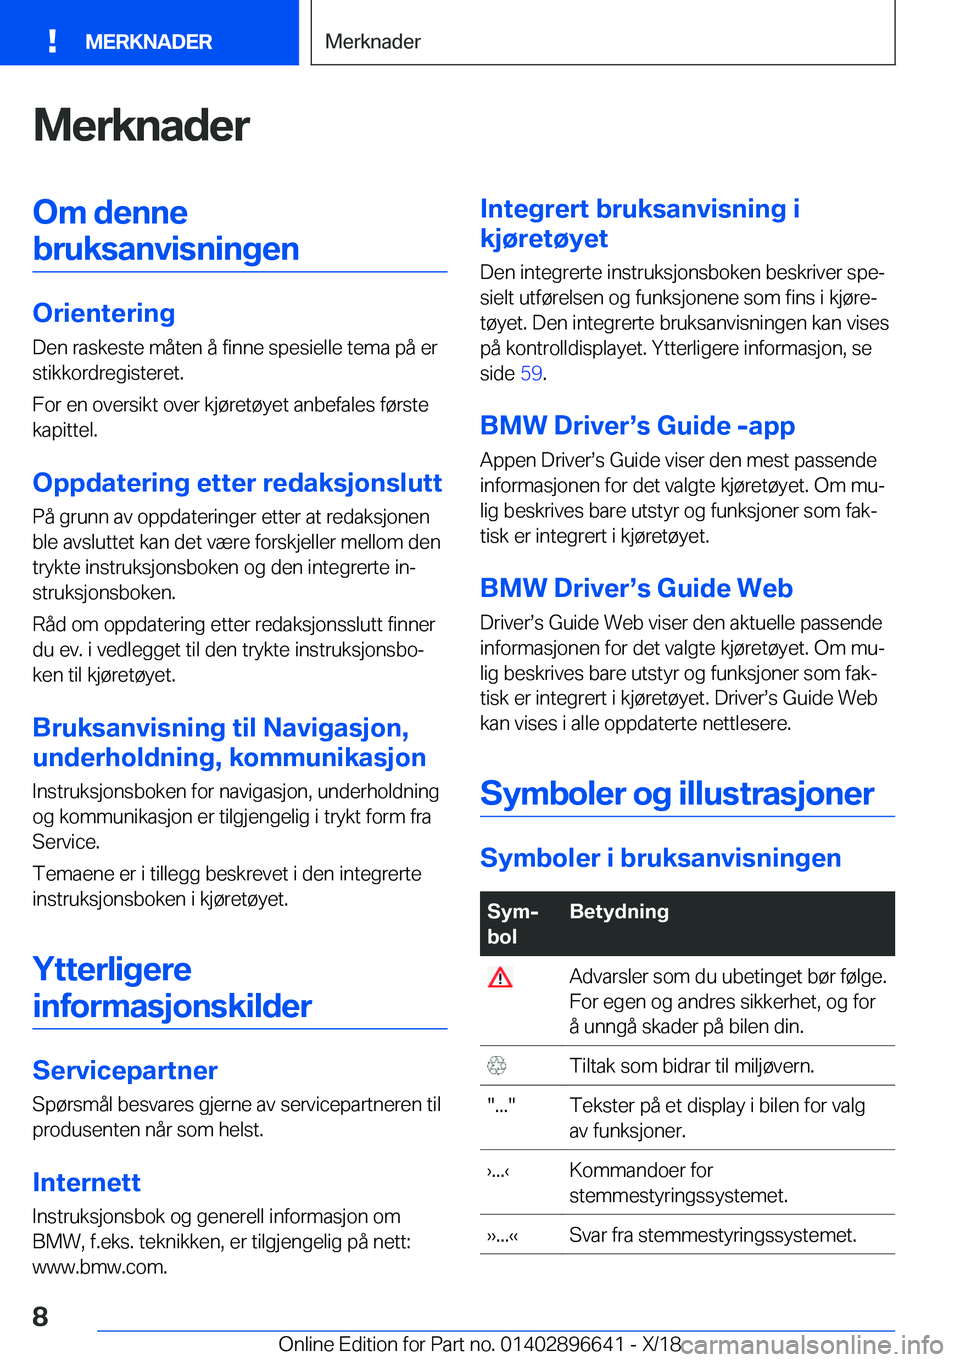 BMW M2 2019  InstruksjonsbØker (in Norwegian) �M�e�r�k�n�a�d�e�r�O�m��d�e�n�n�e�b�r�u�k�s�a�n�v�i�s�n�i�n�g�e�n
�O�r�i�e�n�t�e�r�i�n�g
�D�e�n��r�a�s�k�e�s�t�e��m�å�t�e�n��å��f�i�n�n�e��s�p�e�s�i�e�l�l�e��t�e�m�a��p�å��e�r �s�t�i�k�k�o